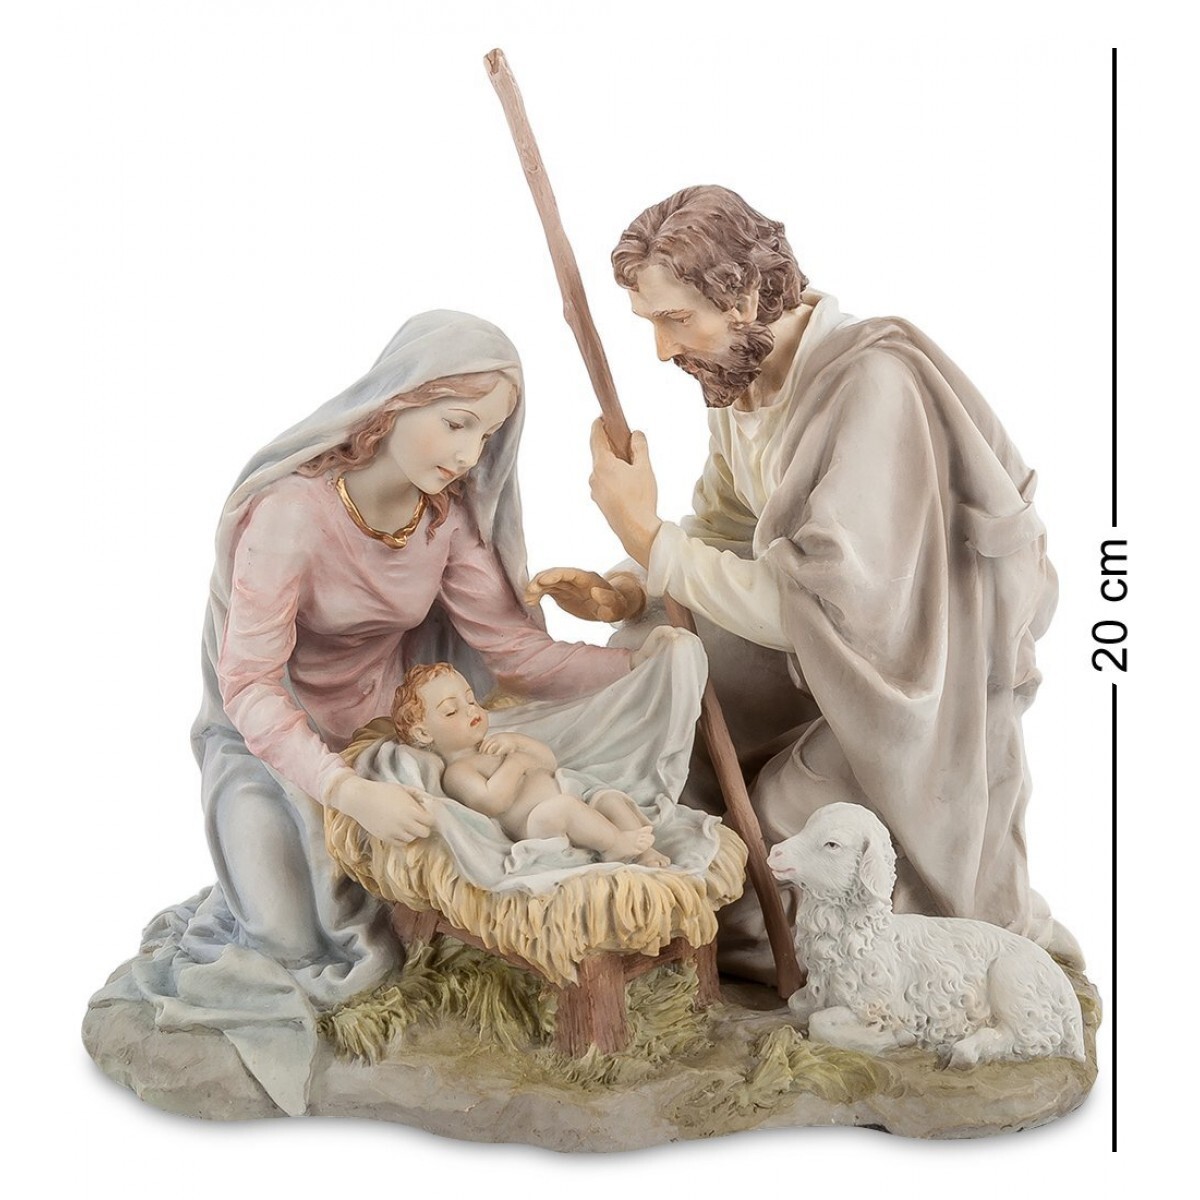 Библая. Фигурки Марии и Иосифа для вертепа. Статуэтка Veronese "Иисус Христос" (Color). Статуэтка Рождество Христово WS-874 113-904761.